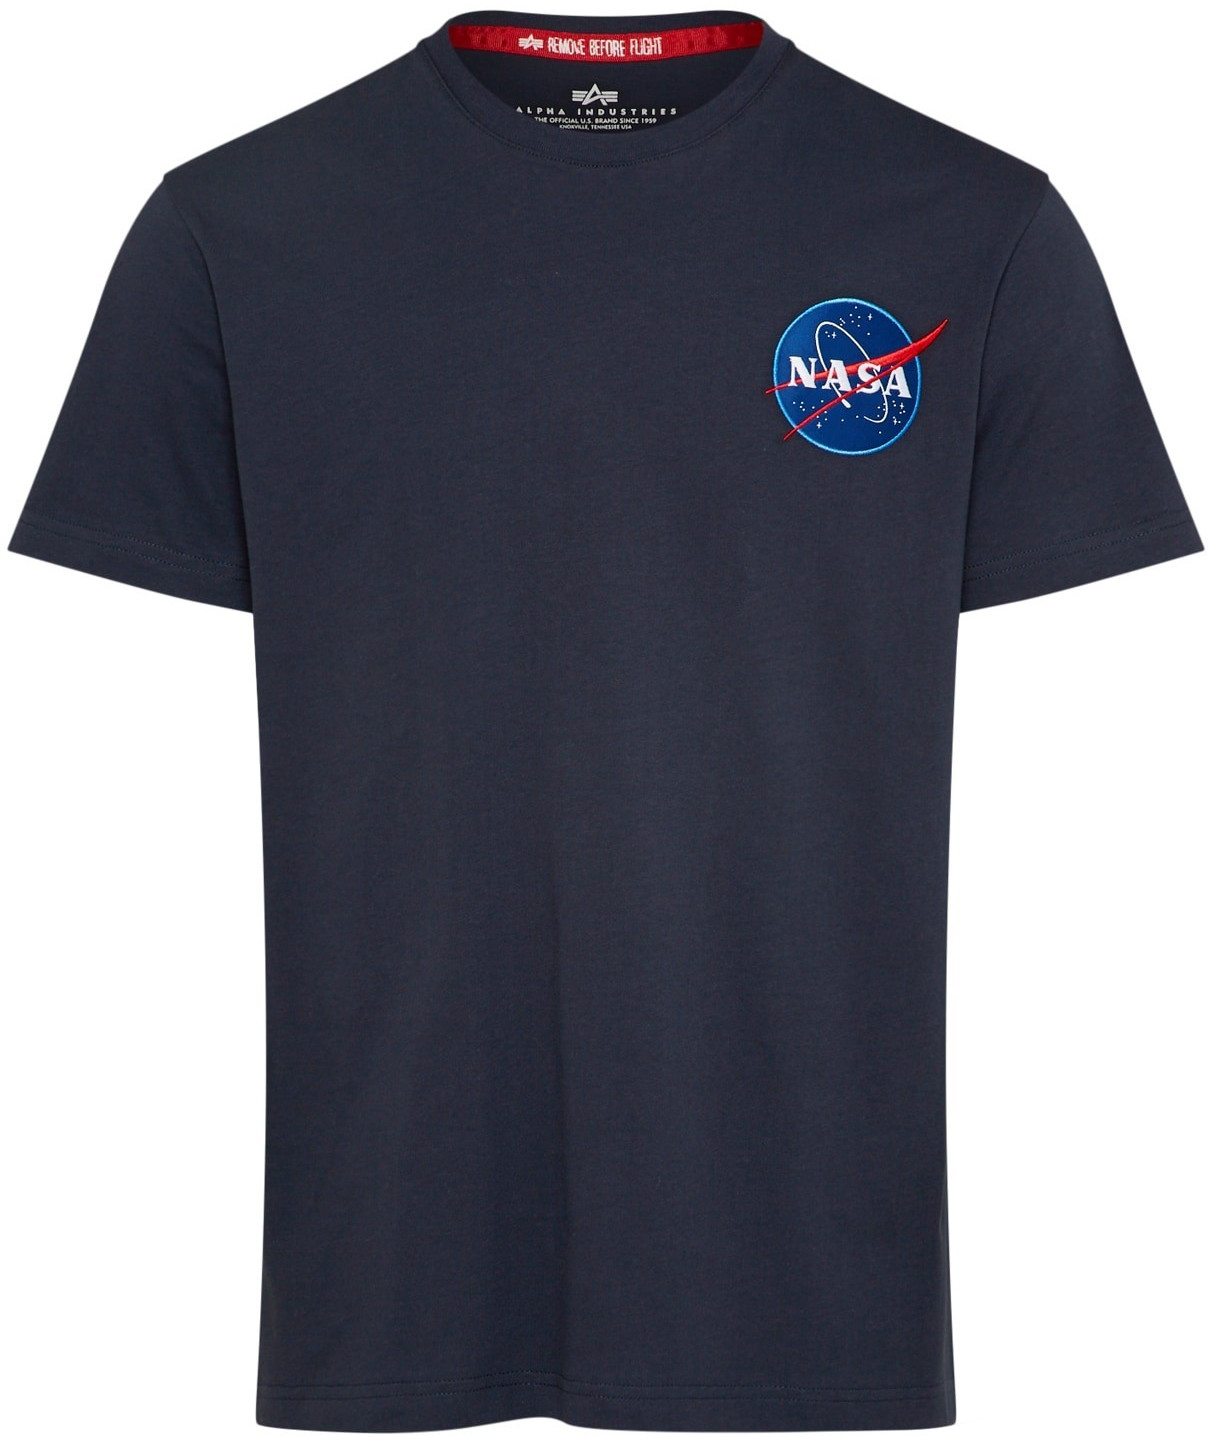 Industries Preisvergleich € | Space Shuttle (176507) bei Alpha ab T-Shirt 20,00